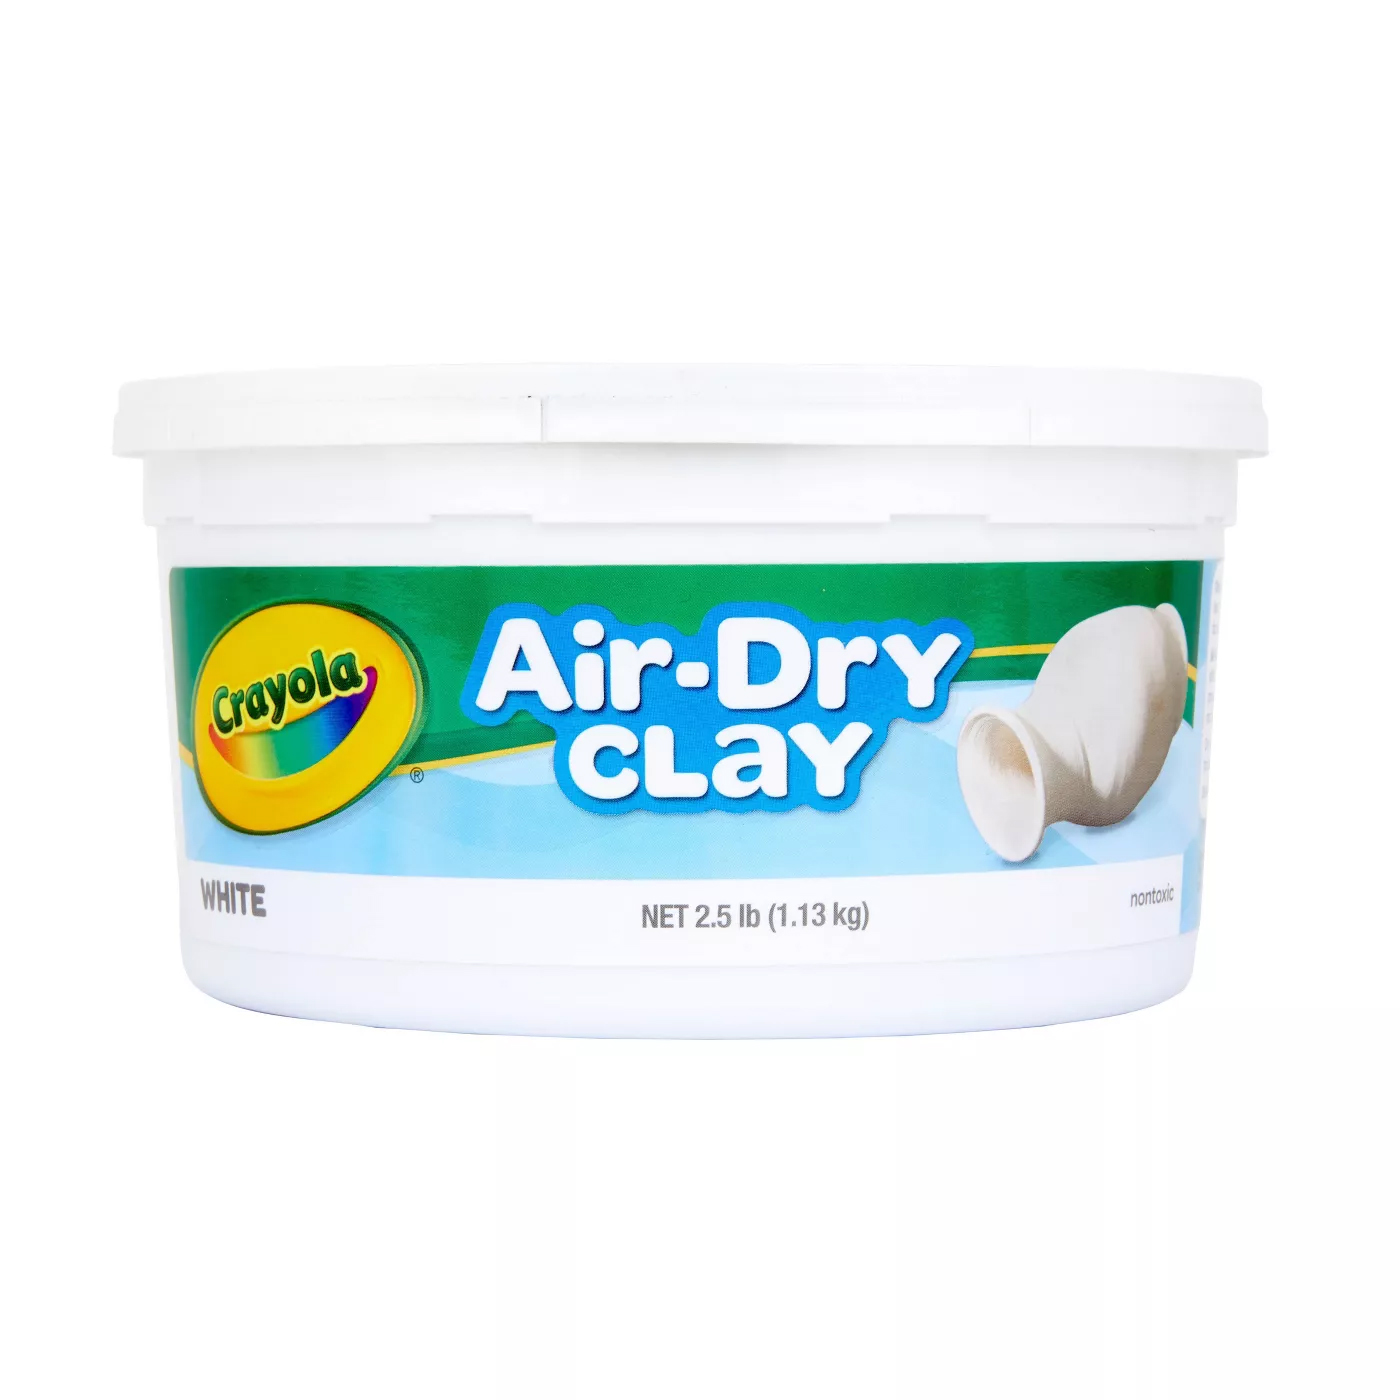 air dry clay